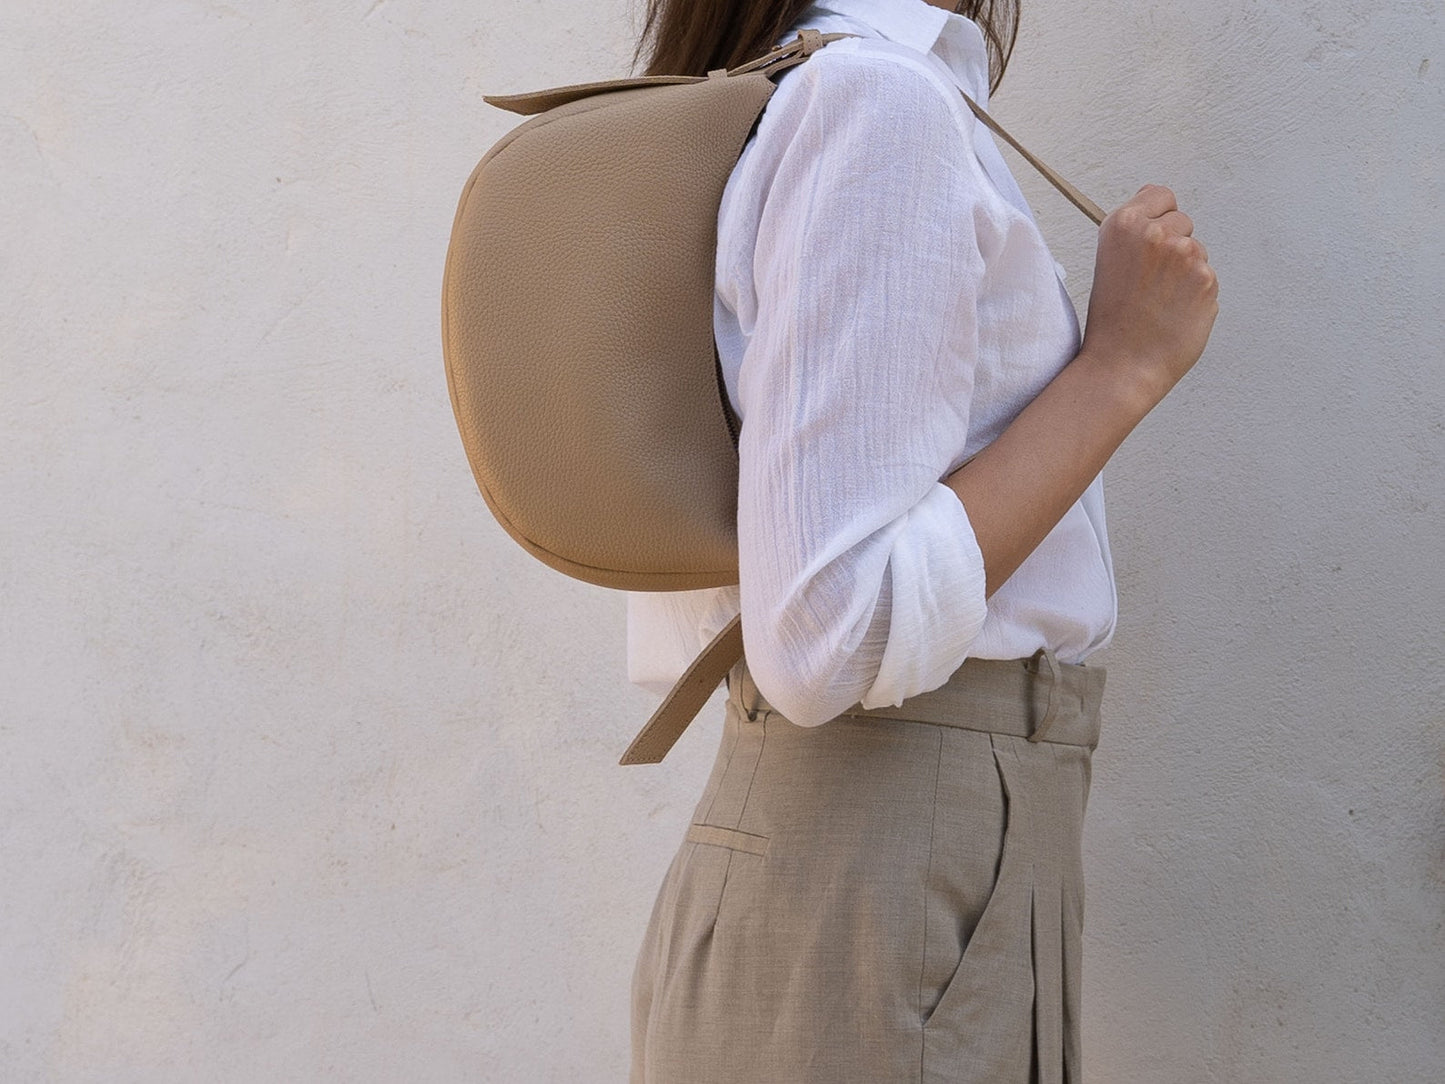 MOON - Shoulder Leather bag